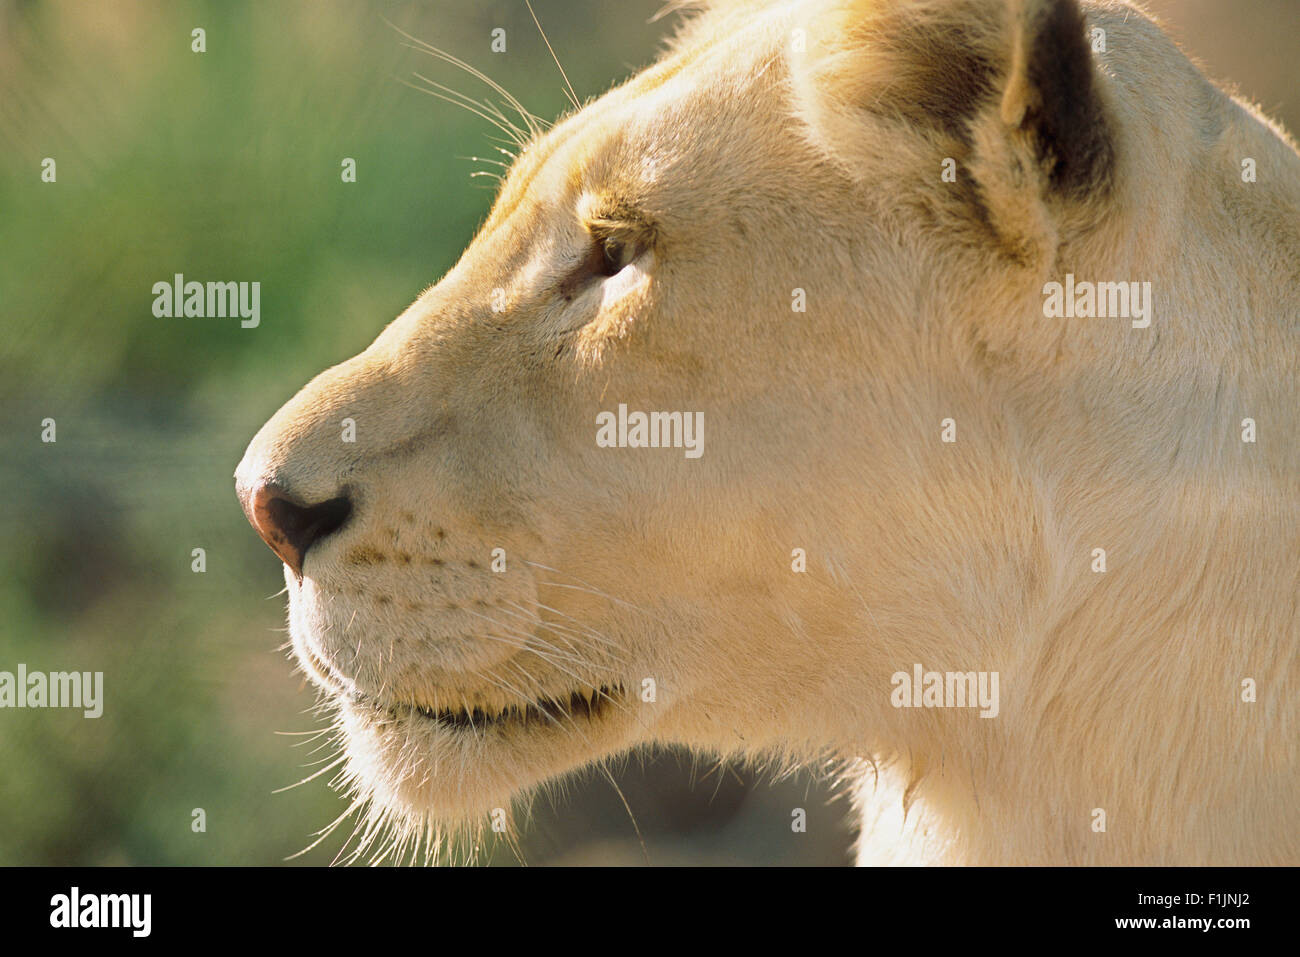 Retrato de leona blanca Foto de stock